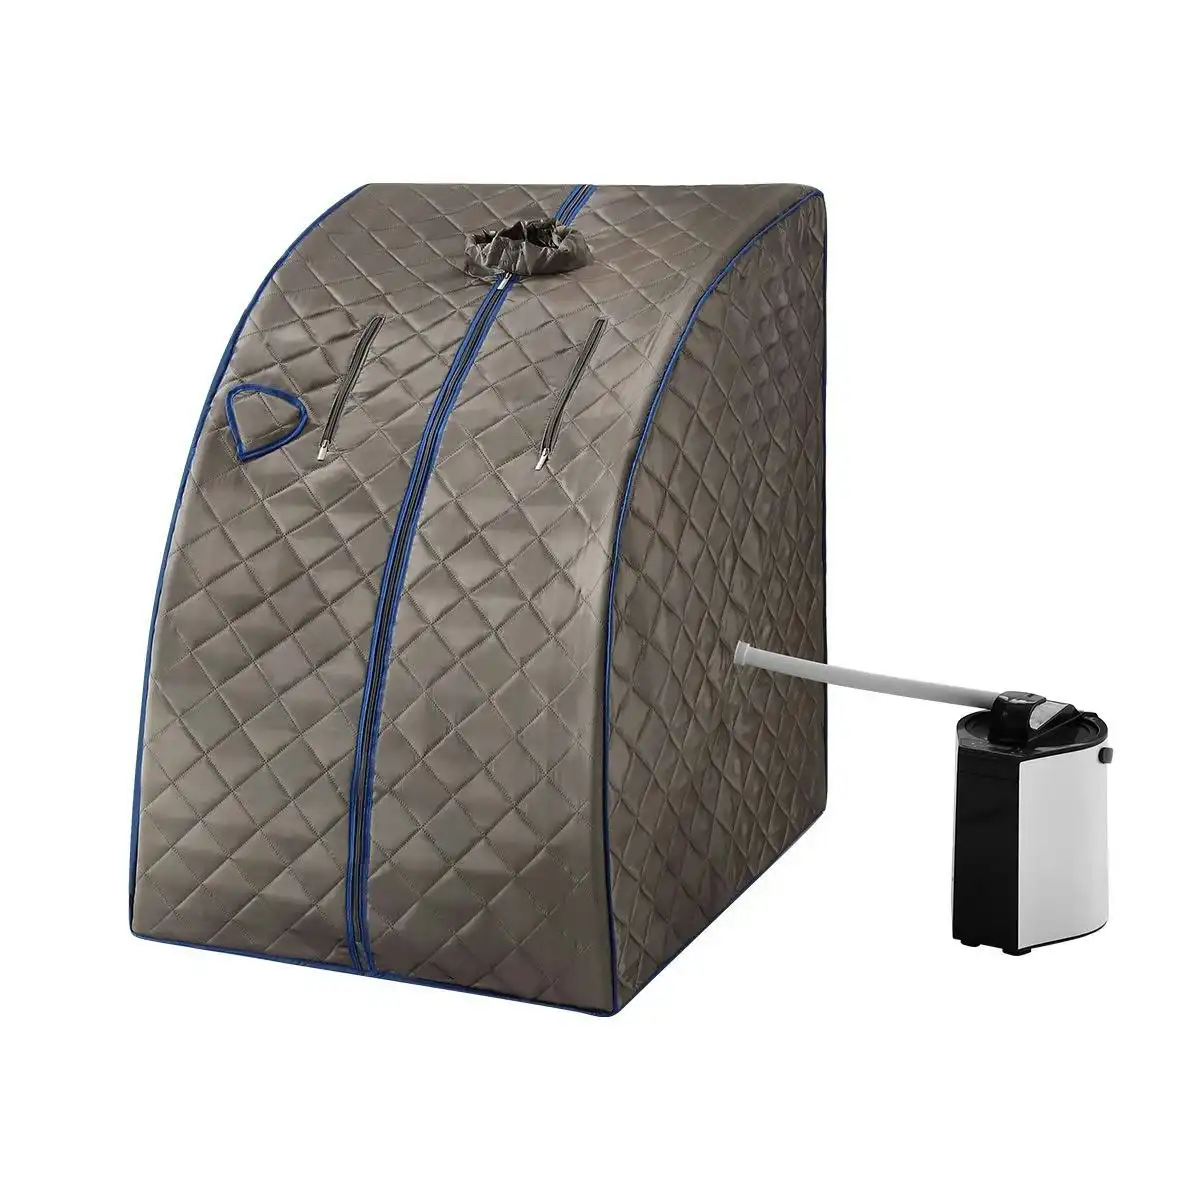 Maxkon Portable Steam Sauna Therapeutic Home Sauna Spa Kit with Steam Pot, Portable Chair & Remote Control